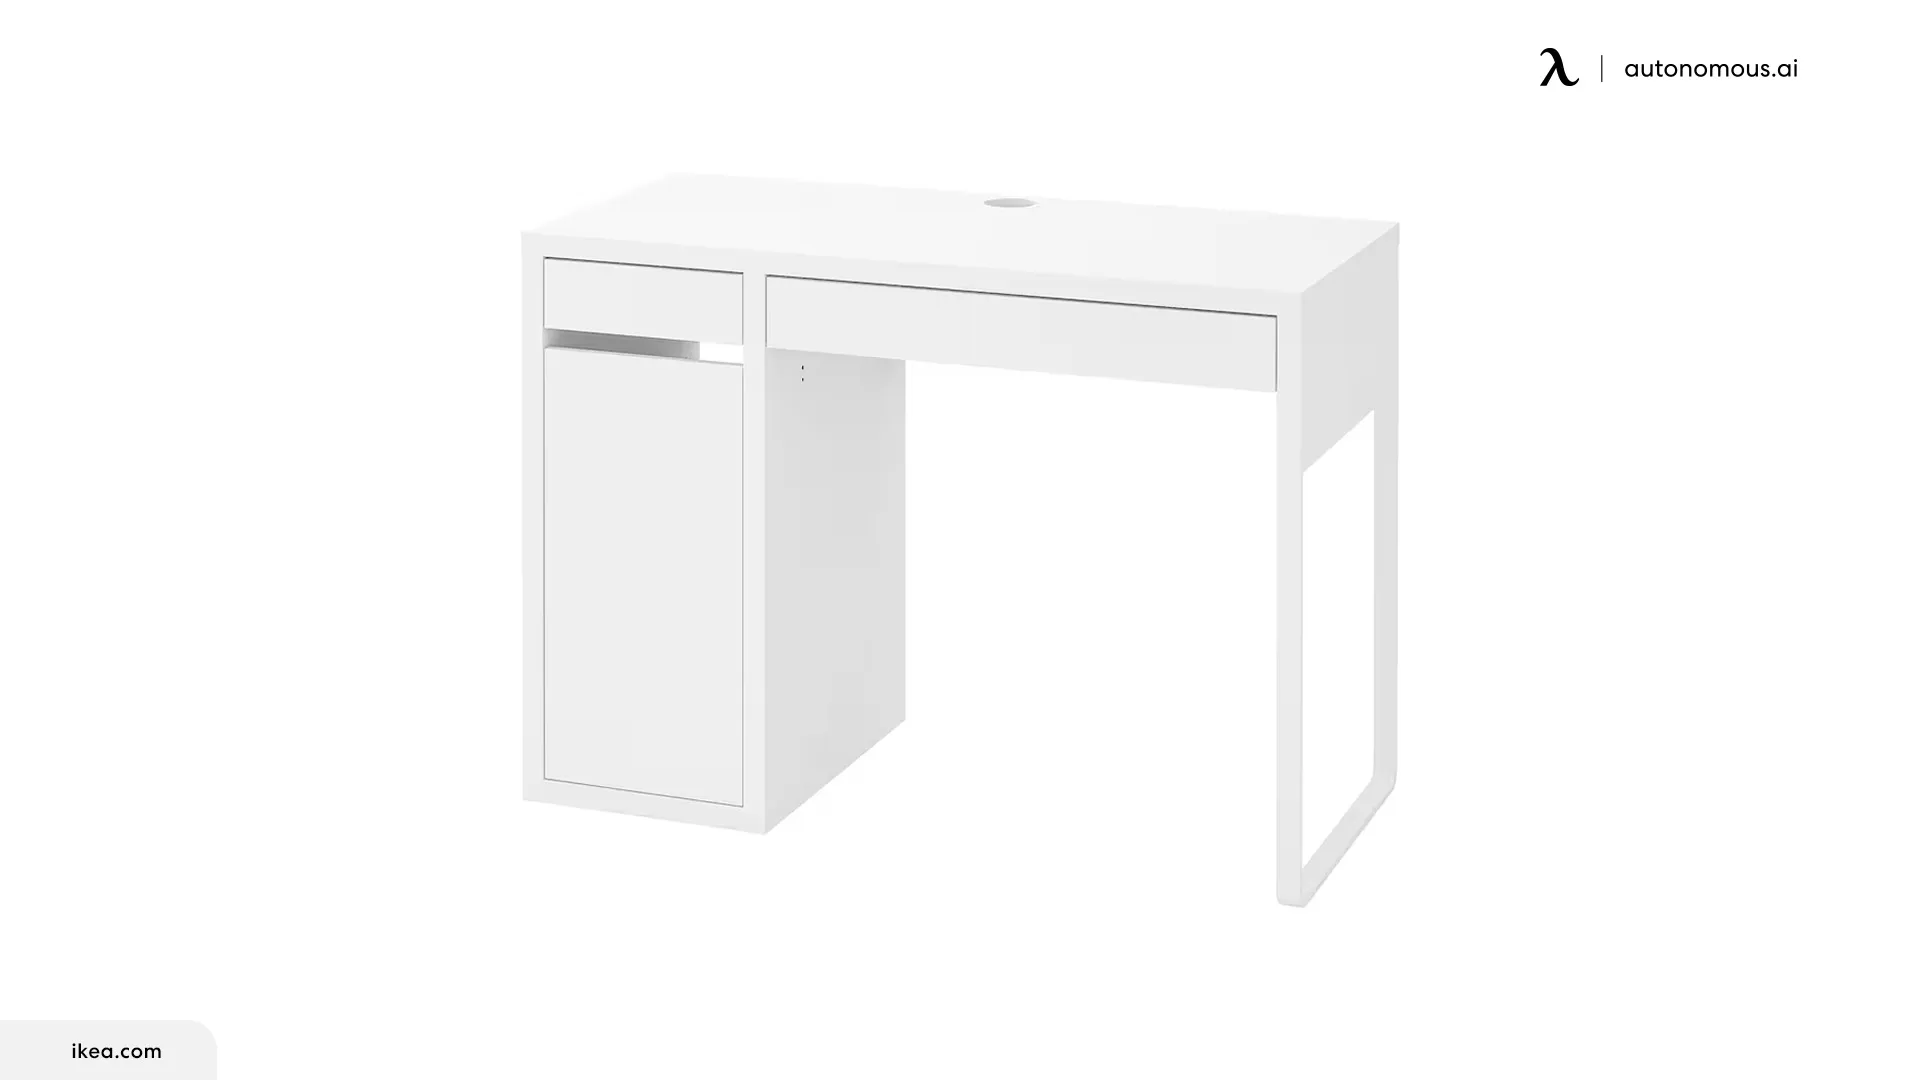 IKEA MICKE Desk